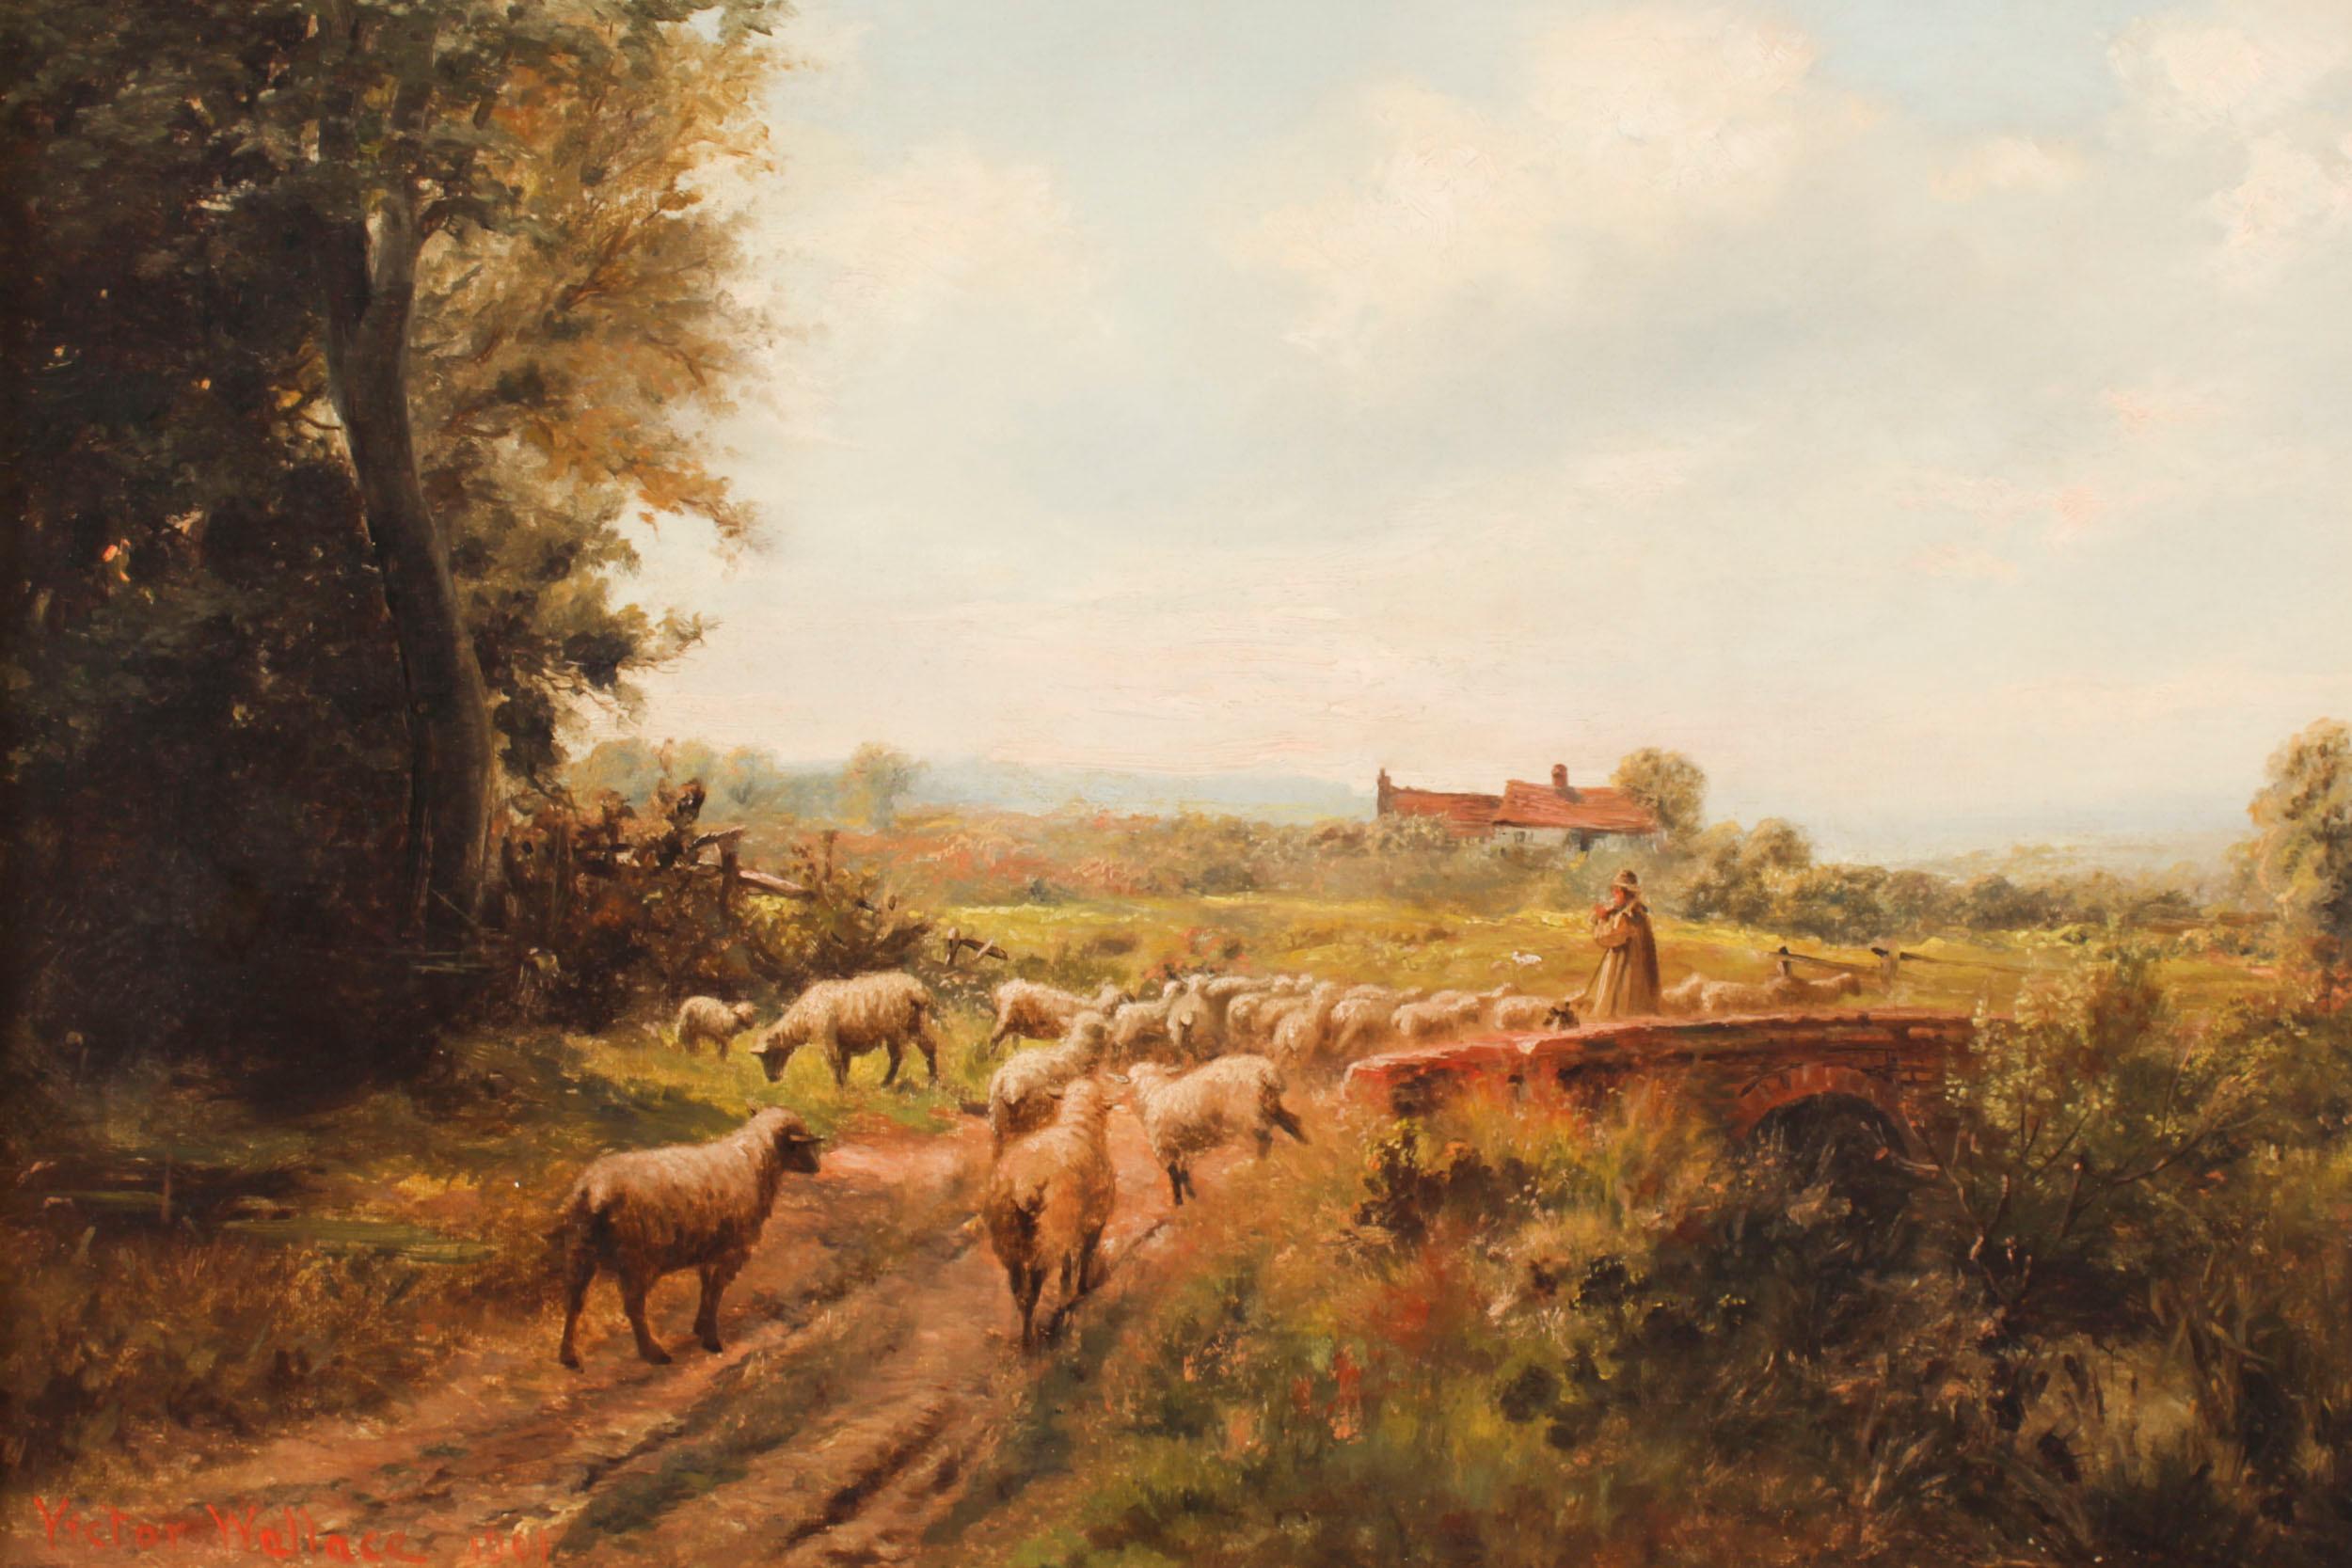 Un berger et son troupeau traversant un pont de pierre, par Victor Wallace, signé et daté 1901 en bas à gauche.
 
Le tableau présente un paysage rustique avec un berger et son troupeau de moutons traversant un pont de pierre avec un chalet en pierre